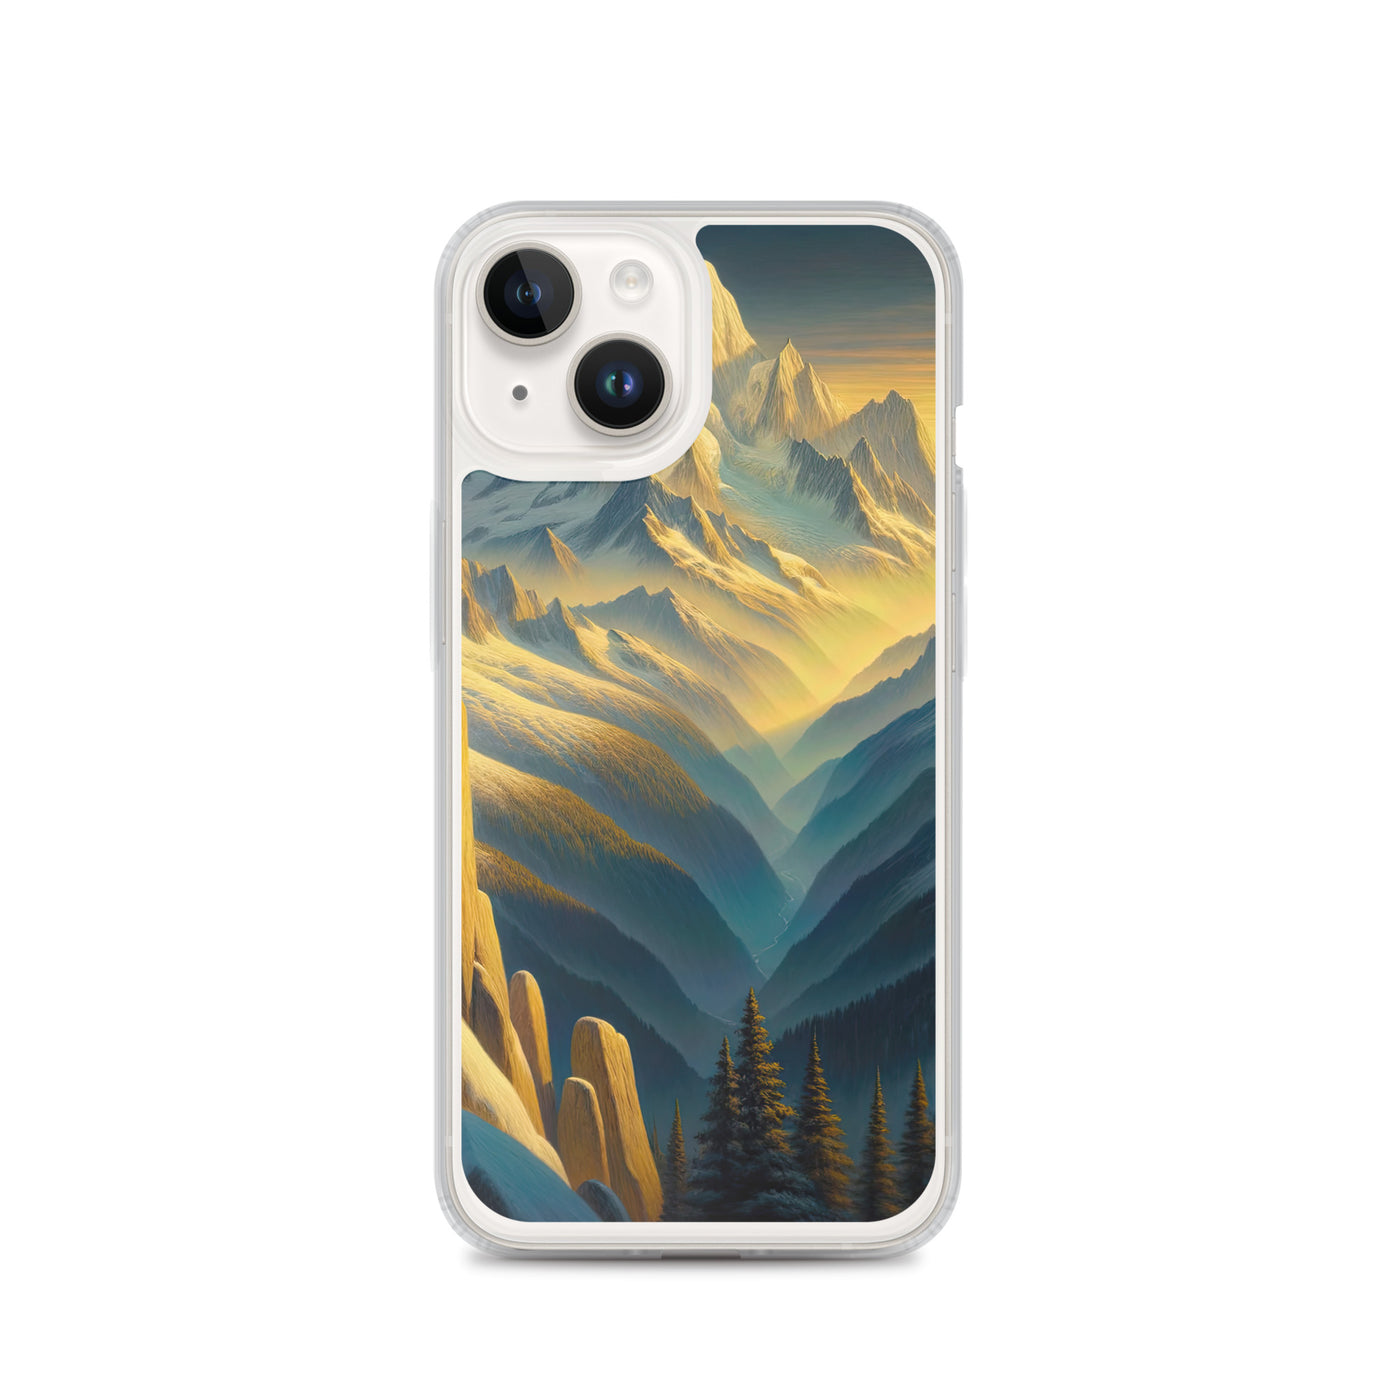 Ölgemälde eines Wanderers bei Morgendämmerung auf Alpengipfeln mit goldenem Sonnenlicht - iPhone Schutzhülle (durchsichtig) wandern xxx yyy zzz iPhone 14